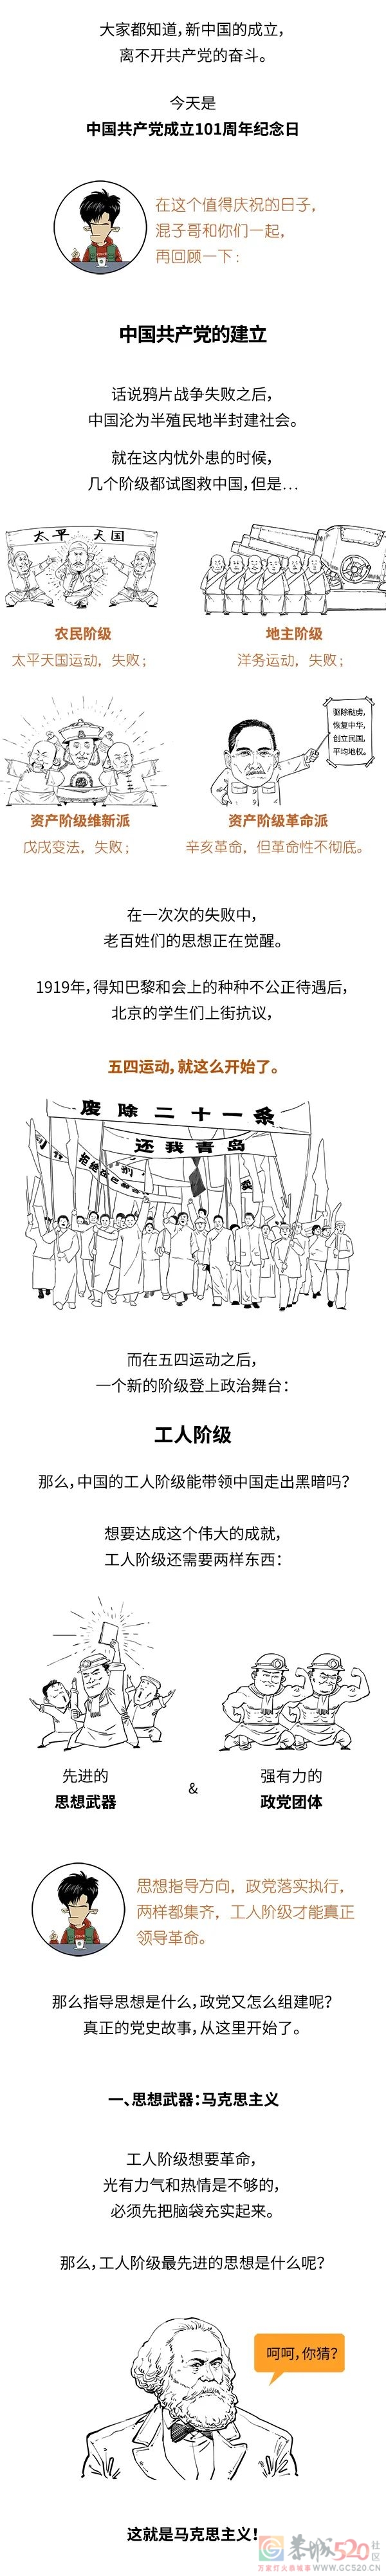 七一建党节，一口气了解中国共产党是咋成立的。87 / 作者:儿时的回忆 / 帖子ID:296897